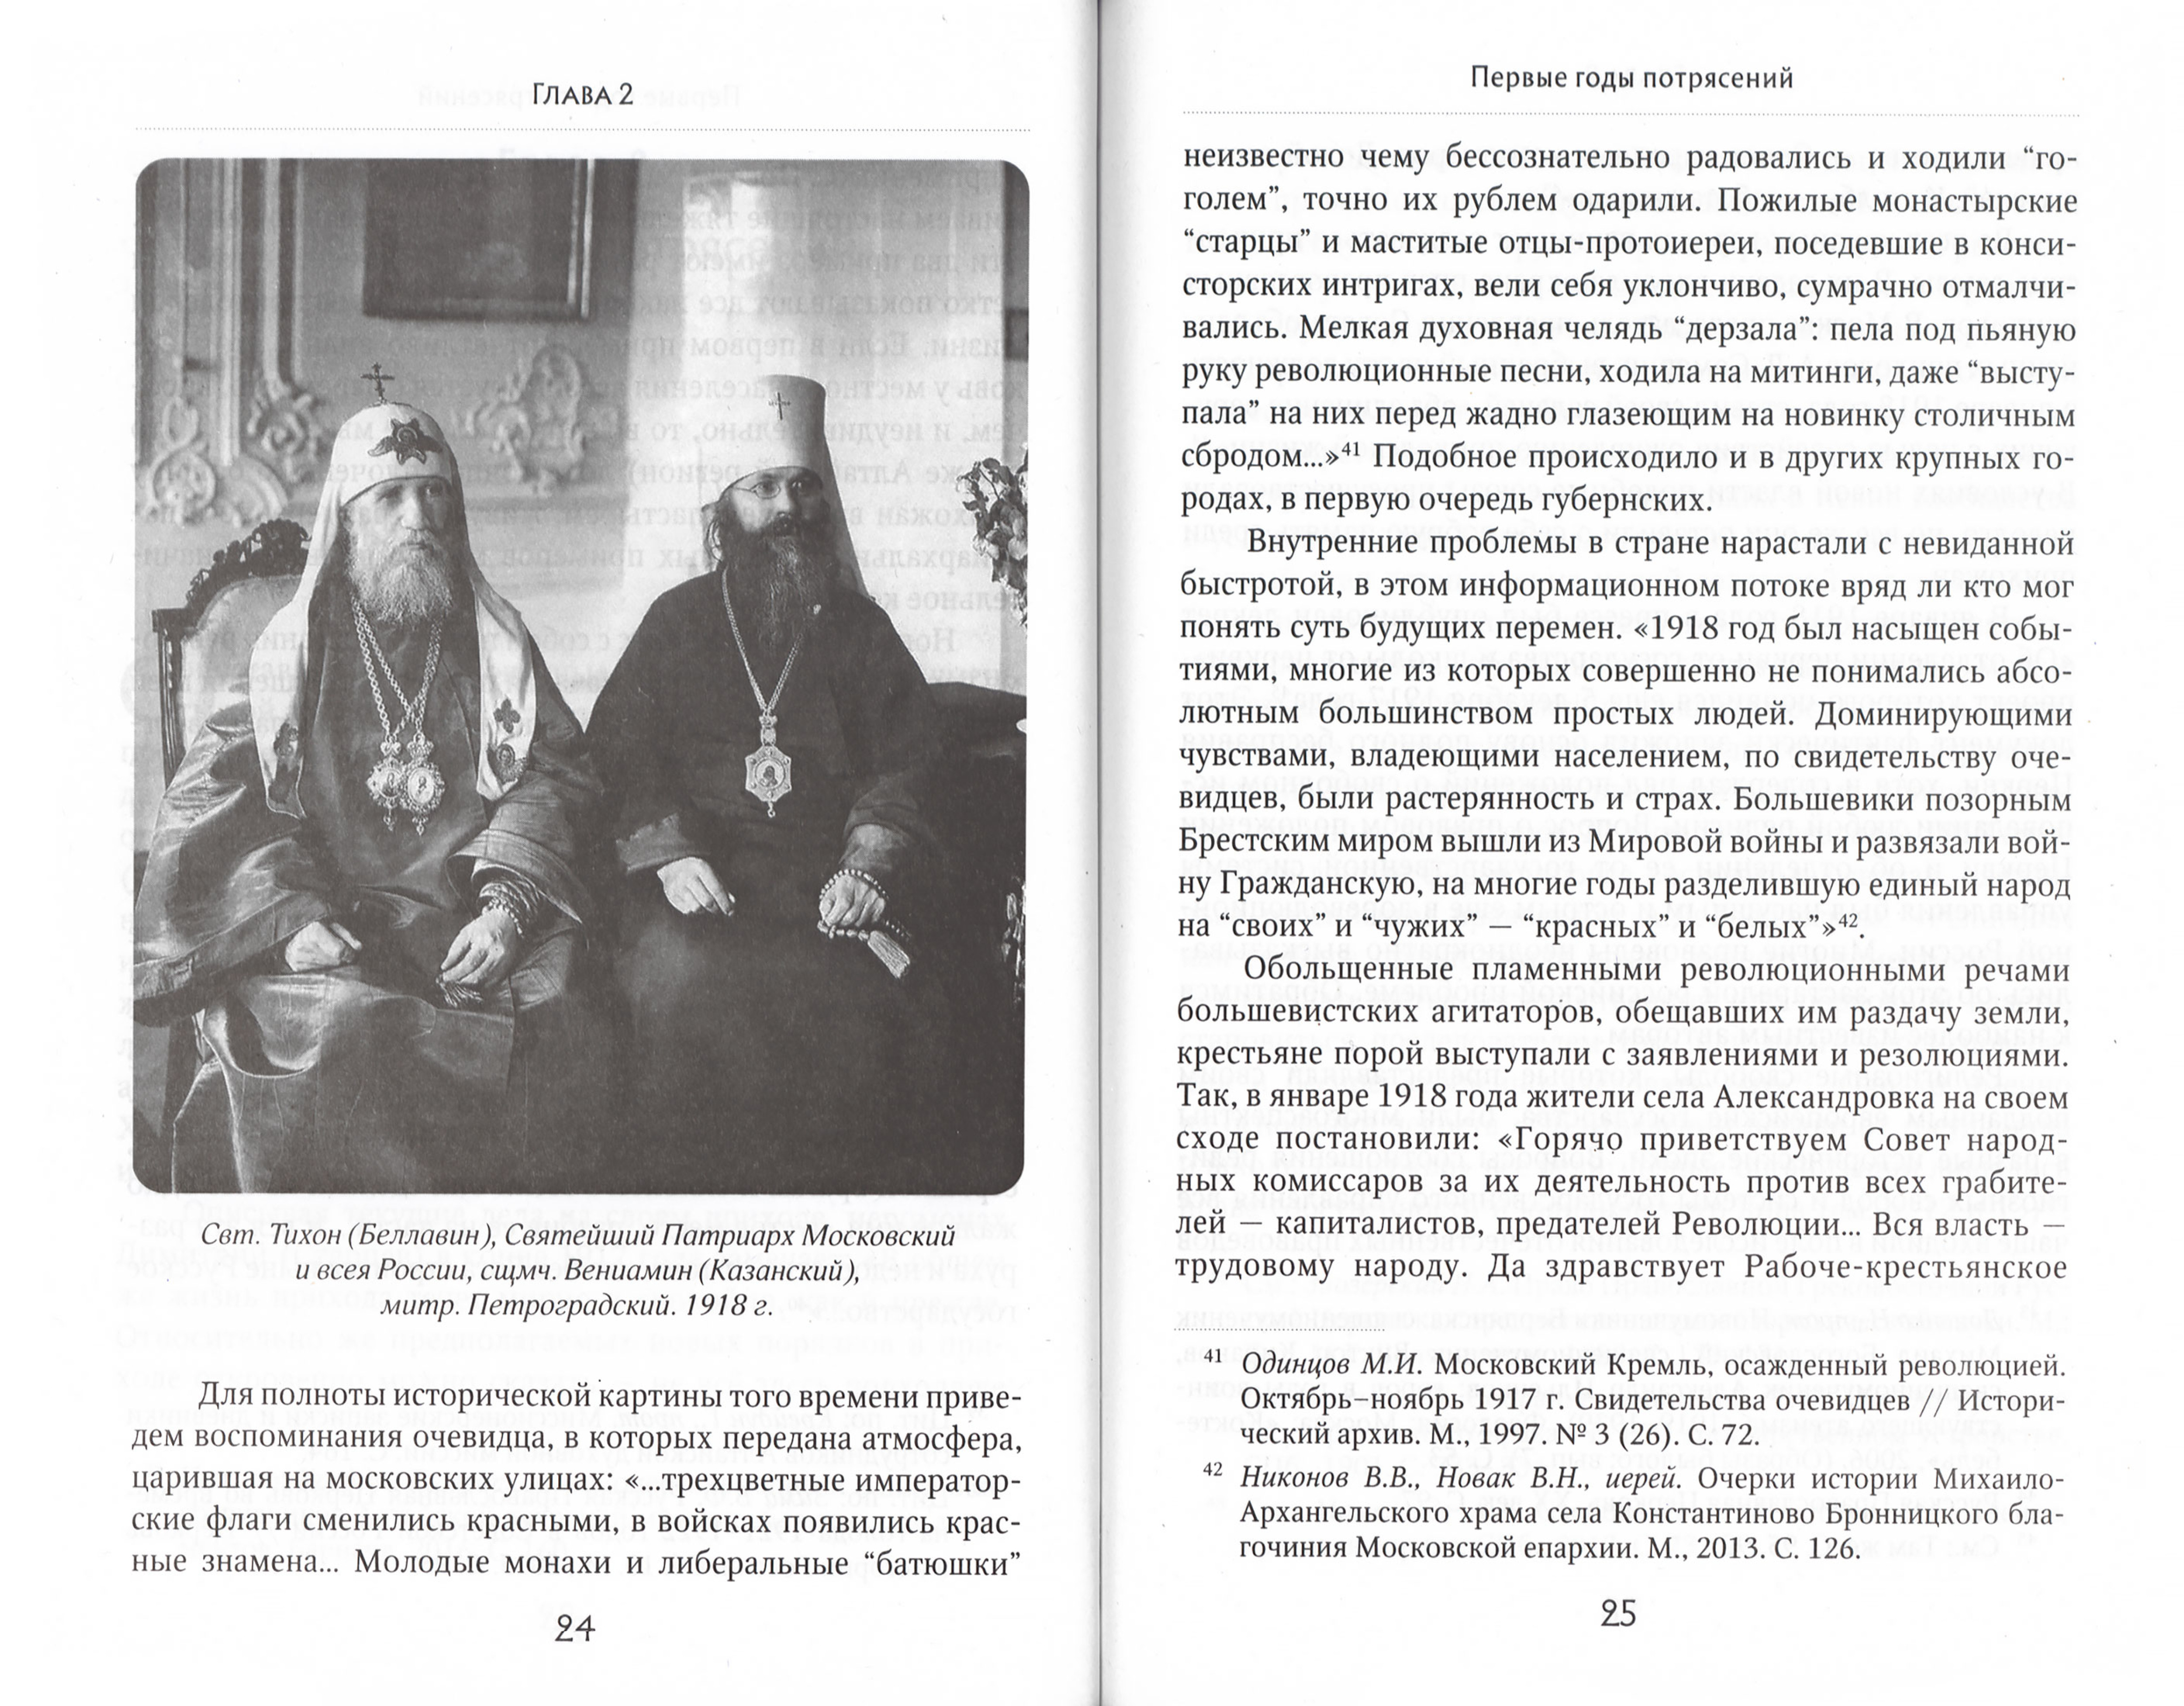 Православные приходы России в первые годы установления советской власти - фото3